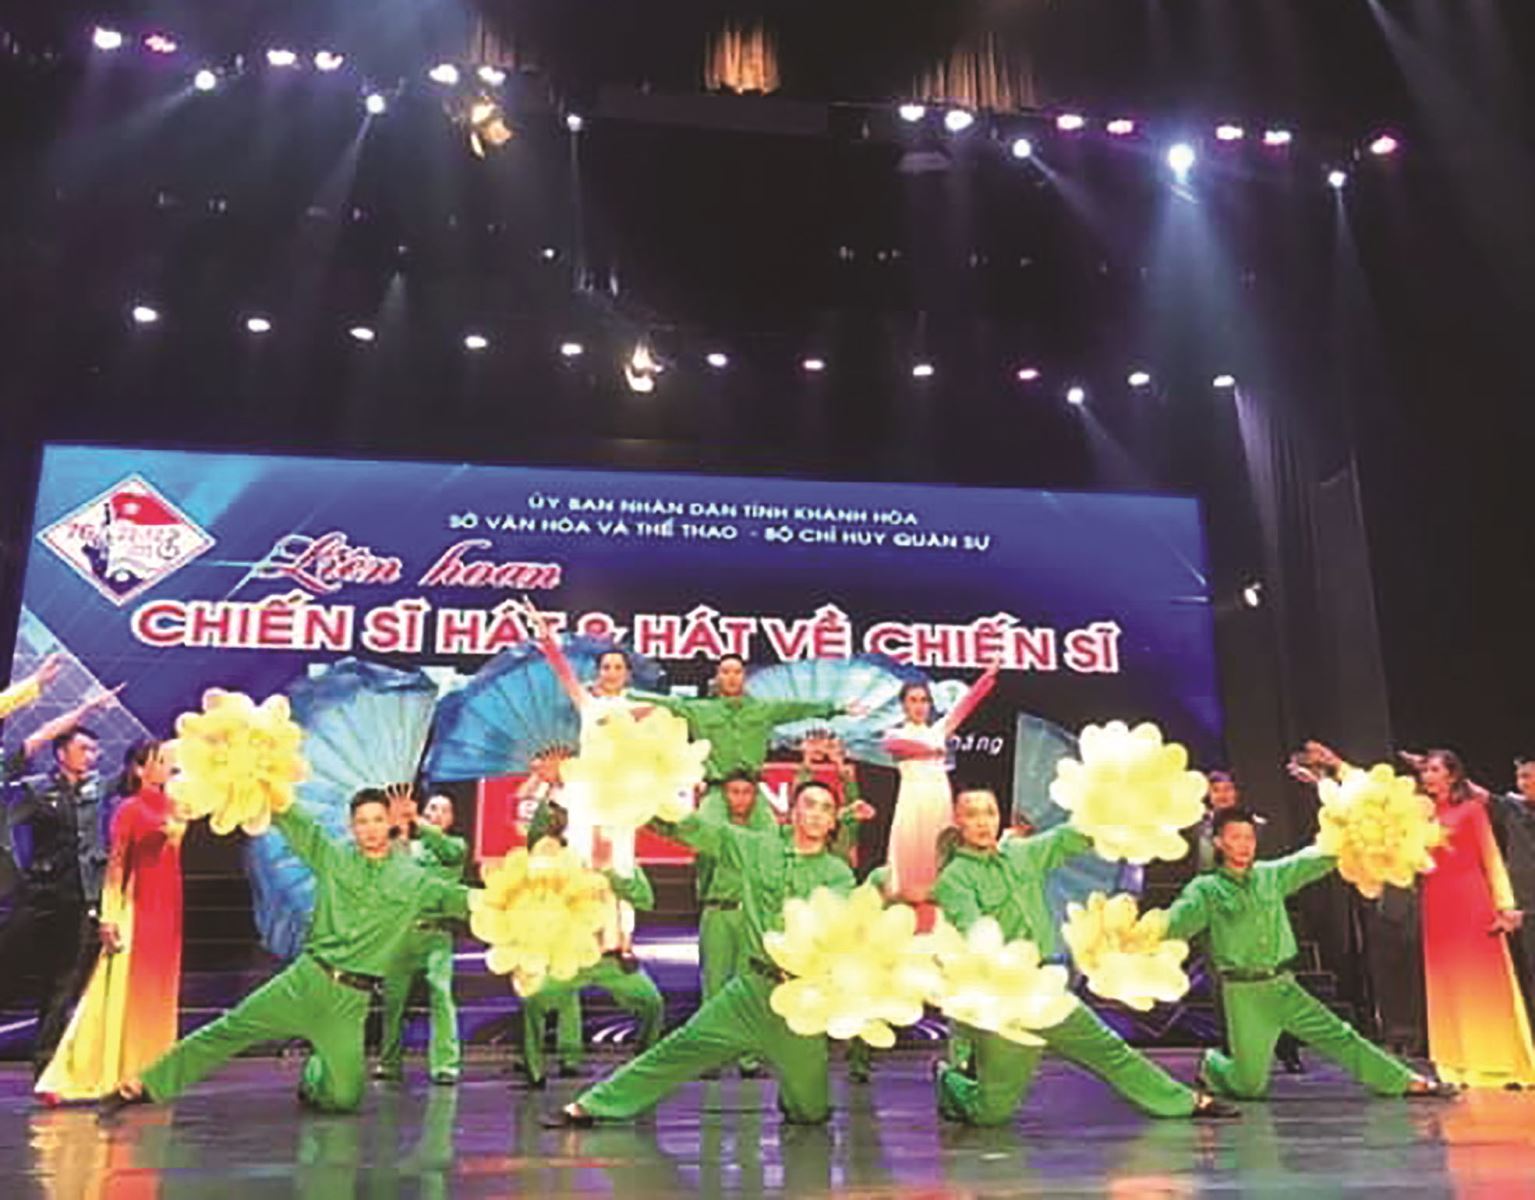 Khánh Hòa: Liên hoan chiến sỹ hát - hát về chiến sỹ lần thứ XXIX năm 2020